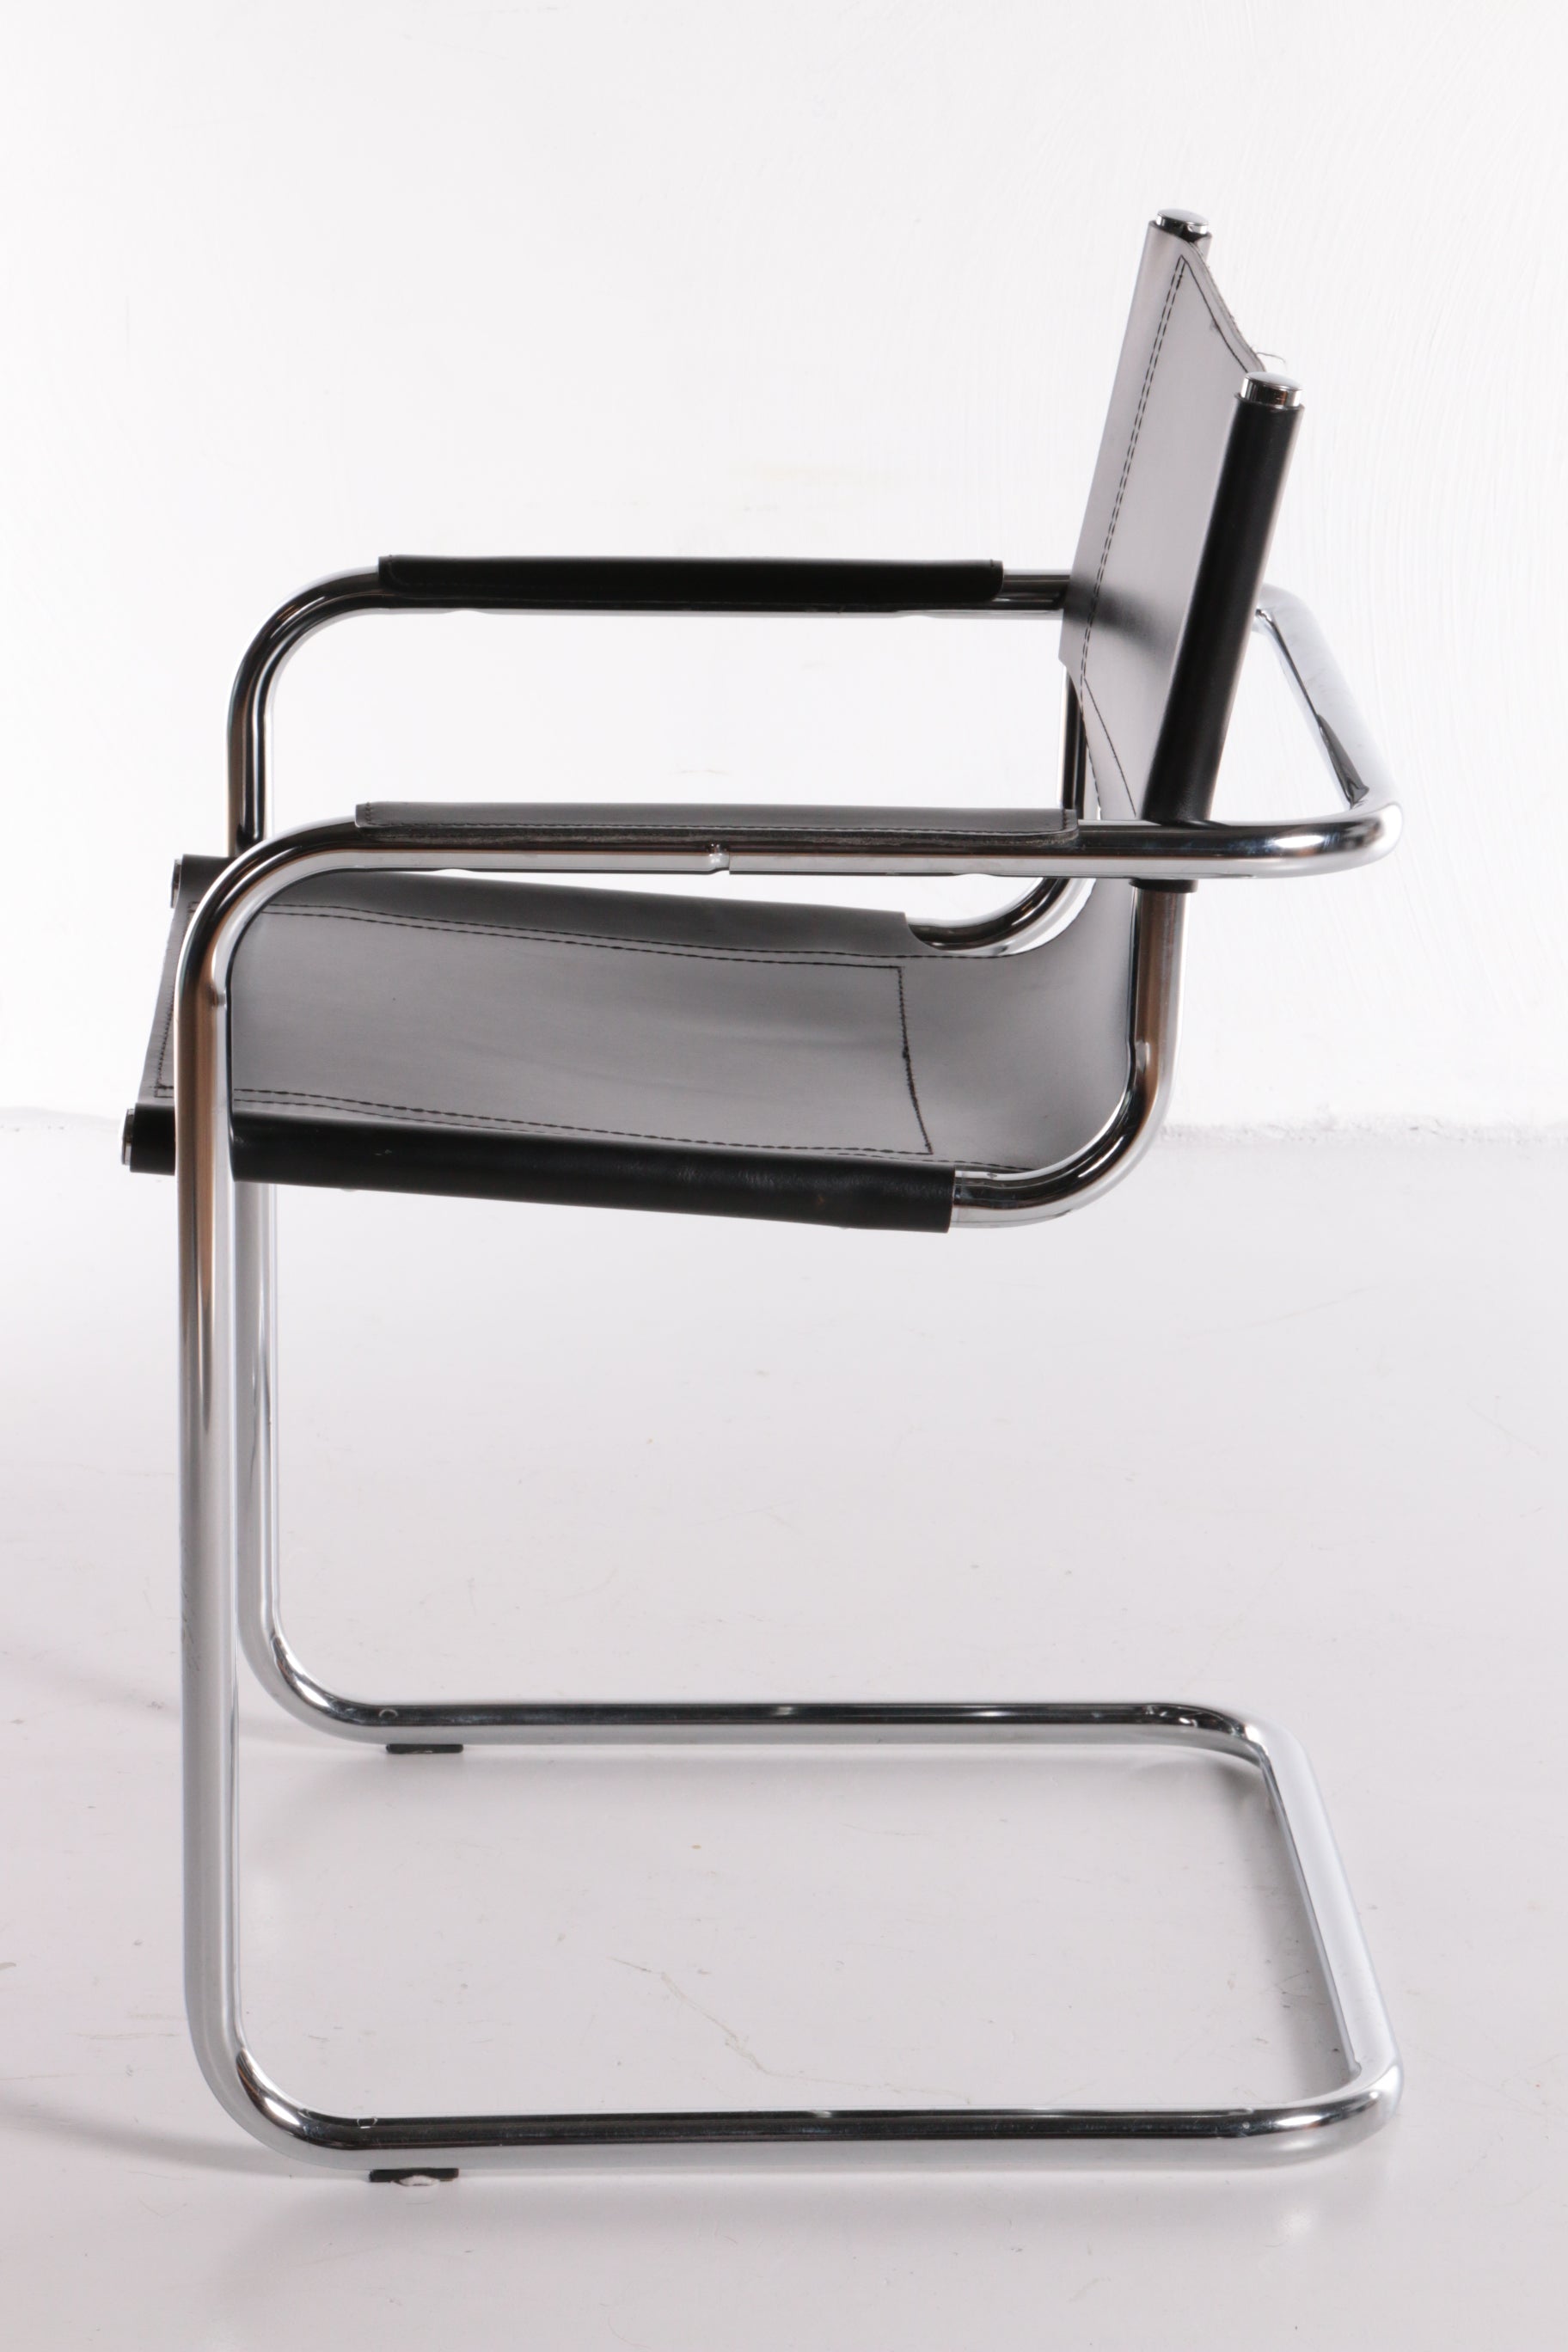 Vintage Set van 6 Buisframe stoelen in de stijl van Mart Stam.